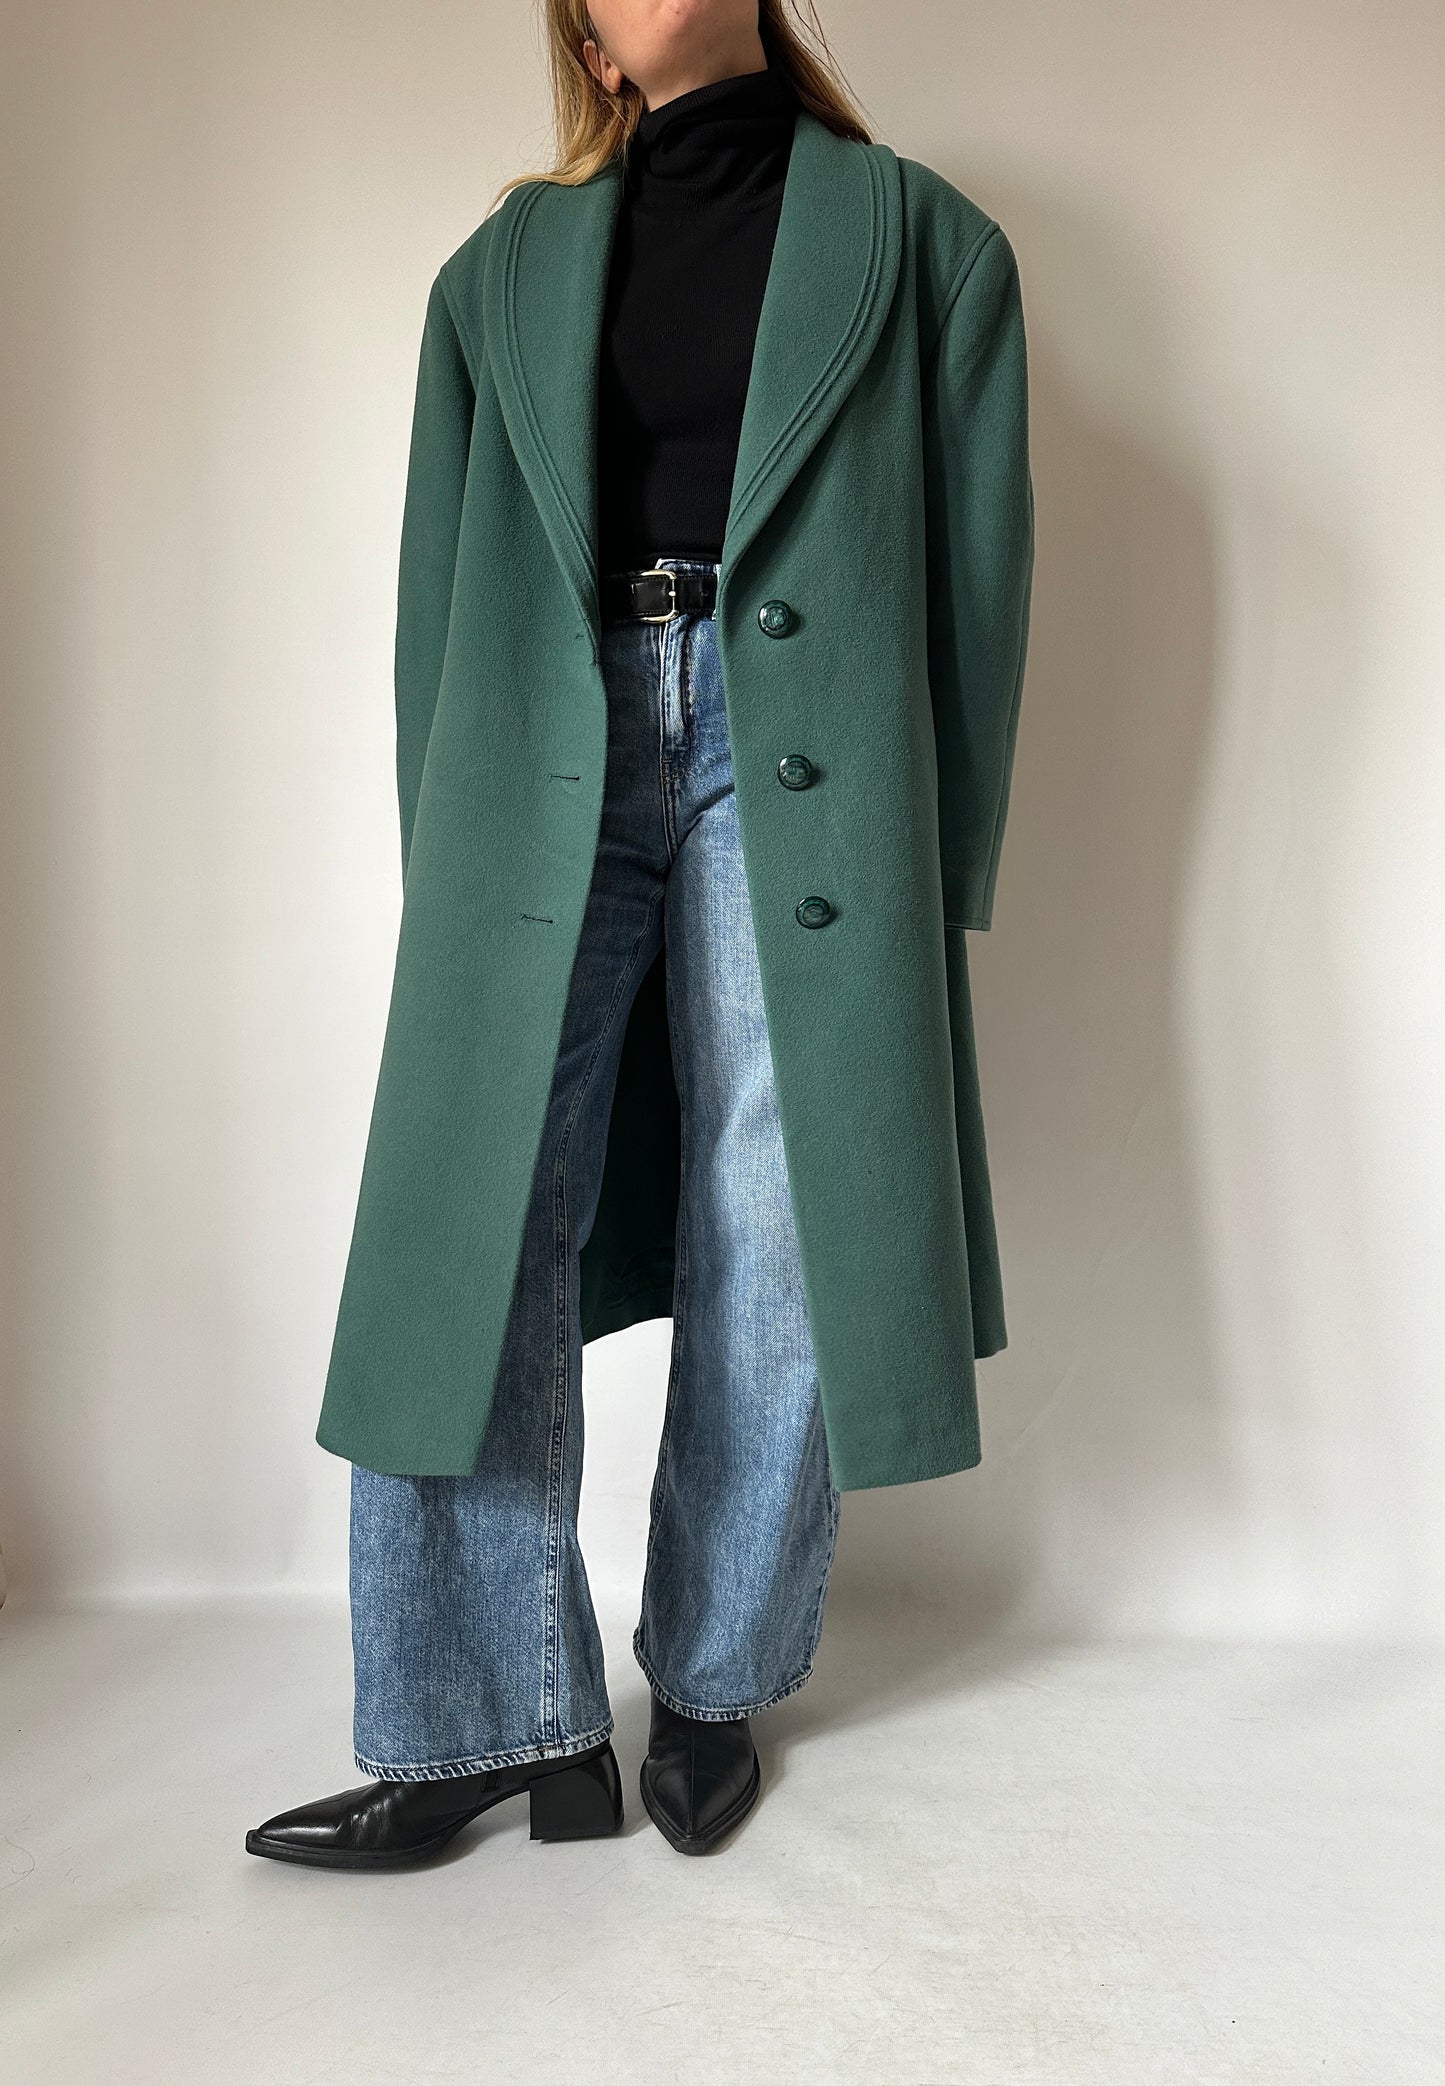 Verde virgin wool coat